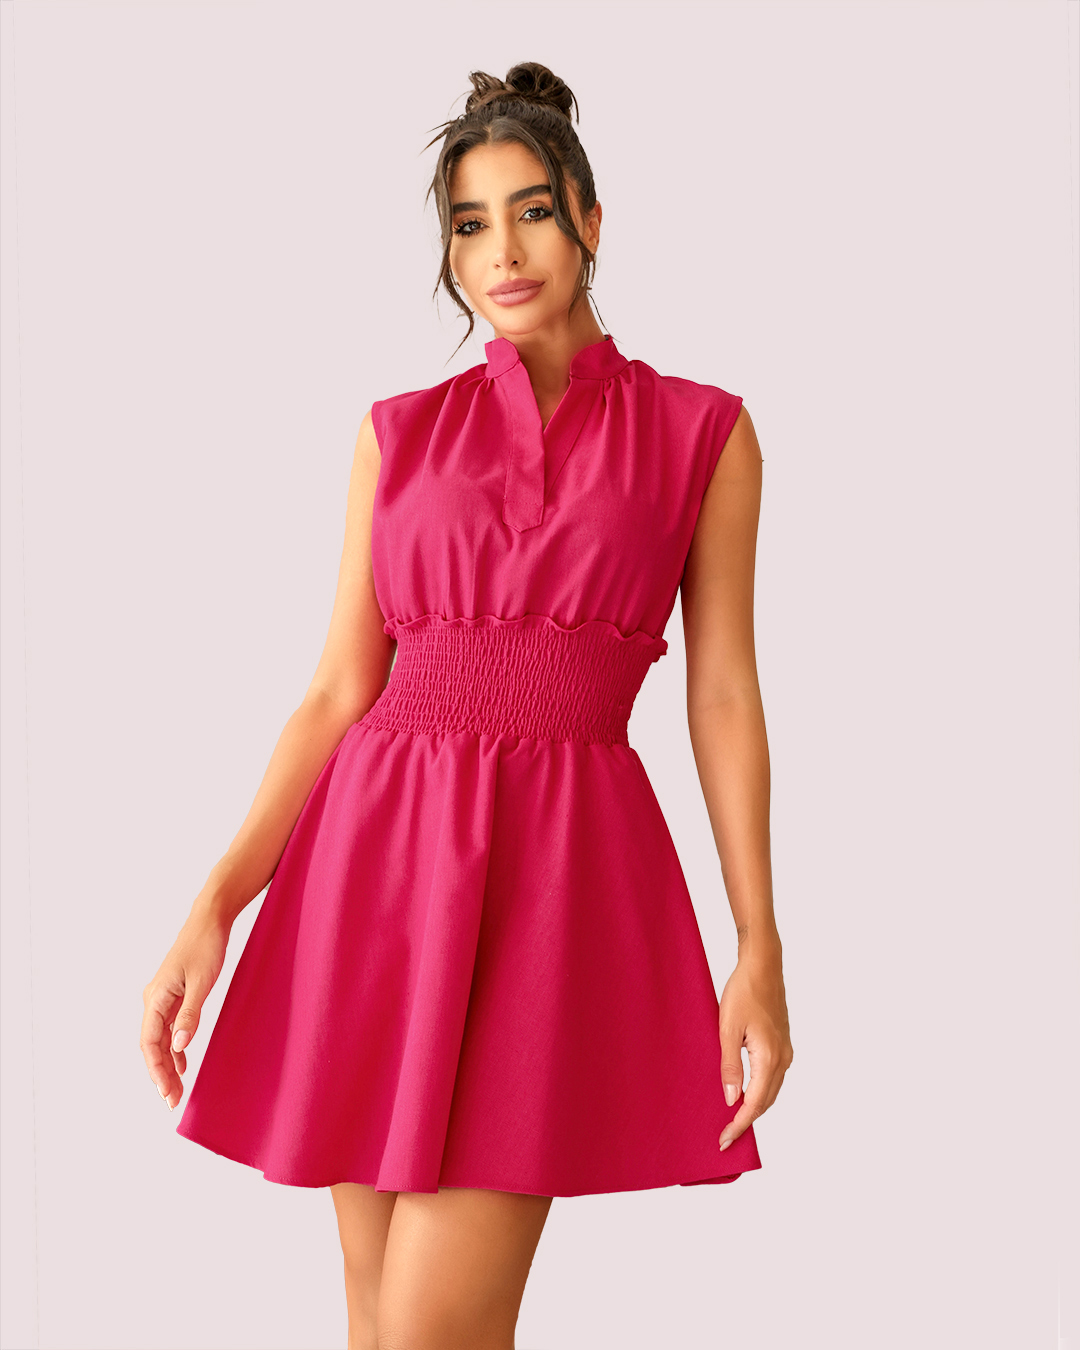 Dot Clothing - Vestido Dot Clothing Rodado em Linho Pink - 1880PINK